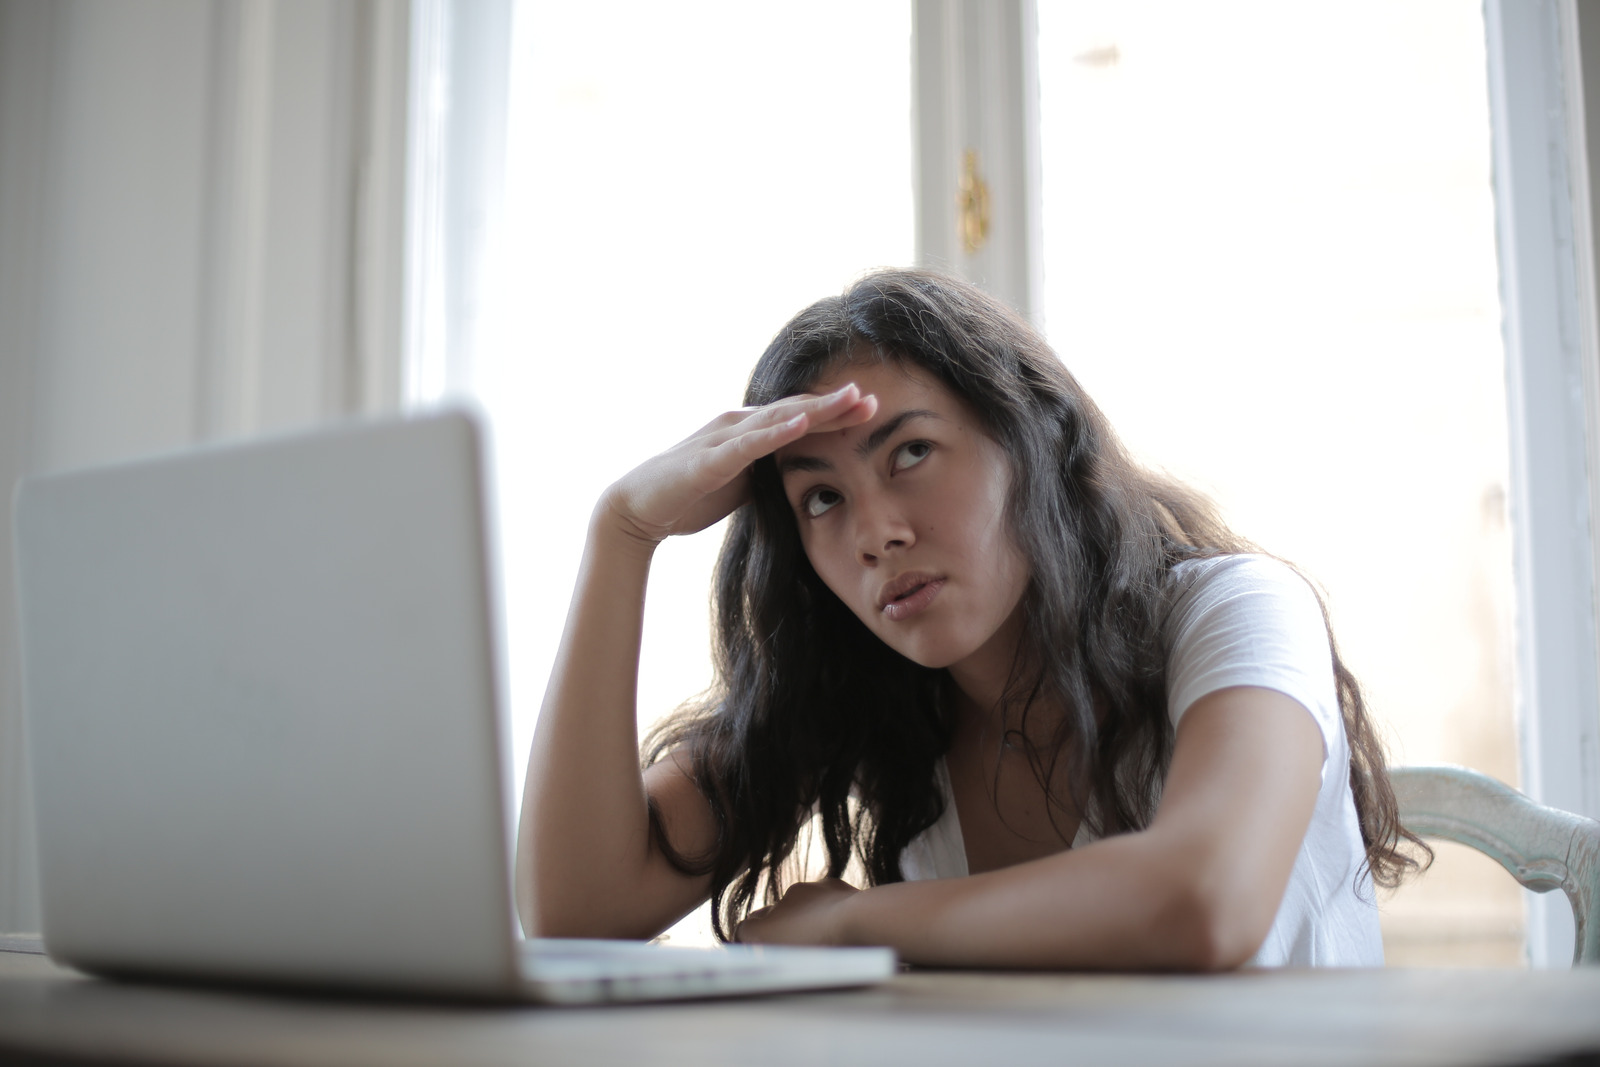 Eine junge Frau sitzt vor einem Laptop und schaut verzweifelt in die Ferne.